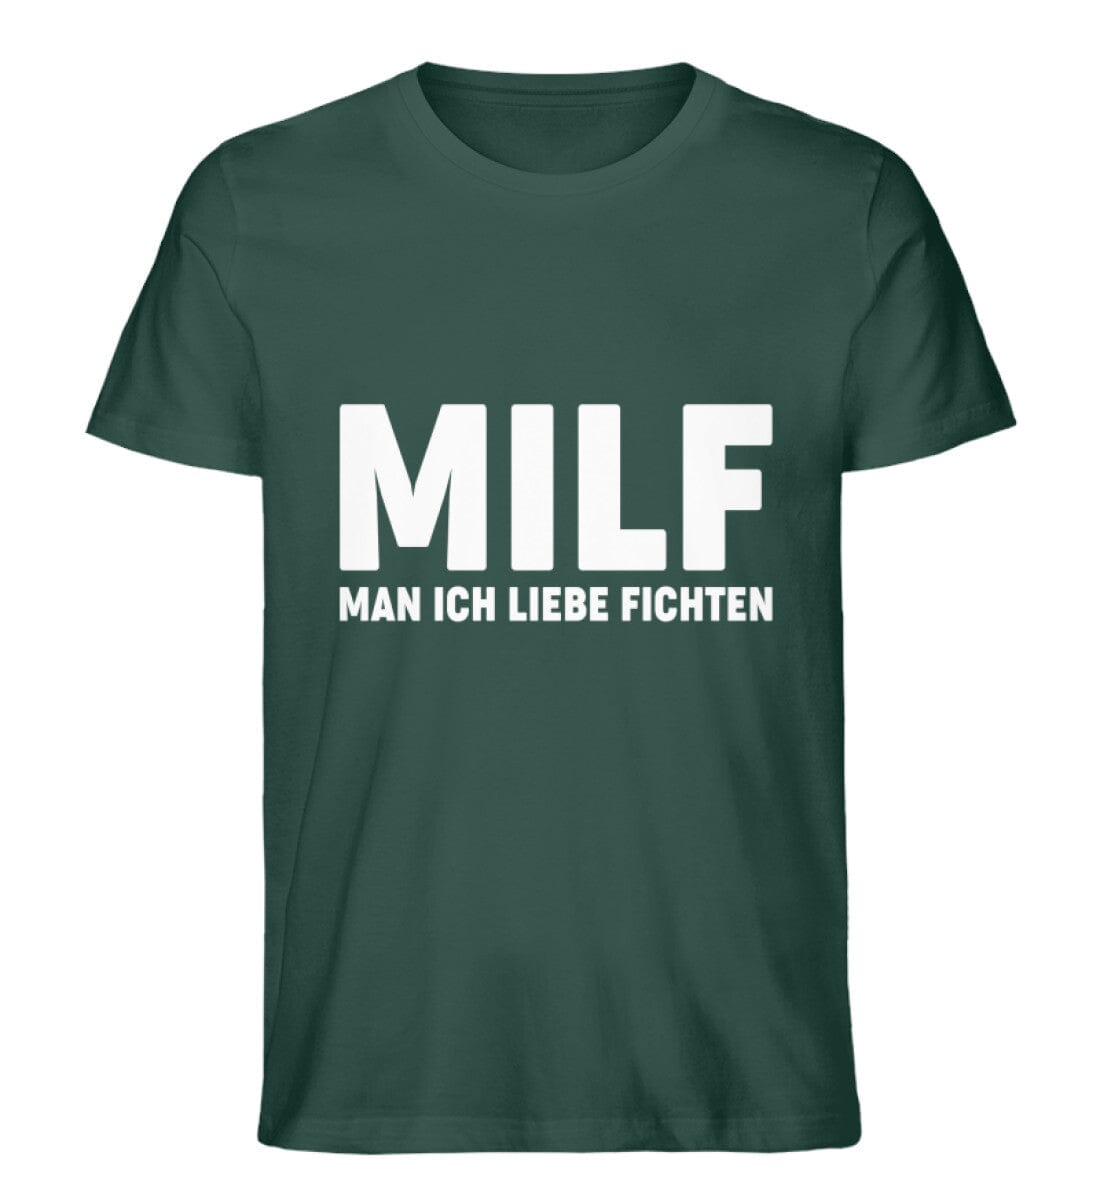 MILF MAN ICH LIEBE FICHTEN - Unisex Premium Bio Shirt Glazed Green S 